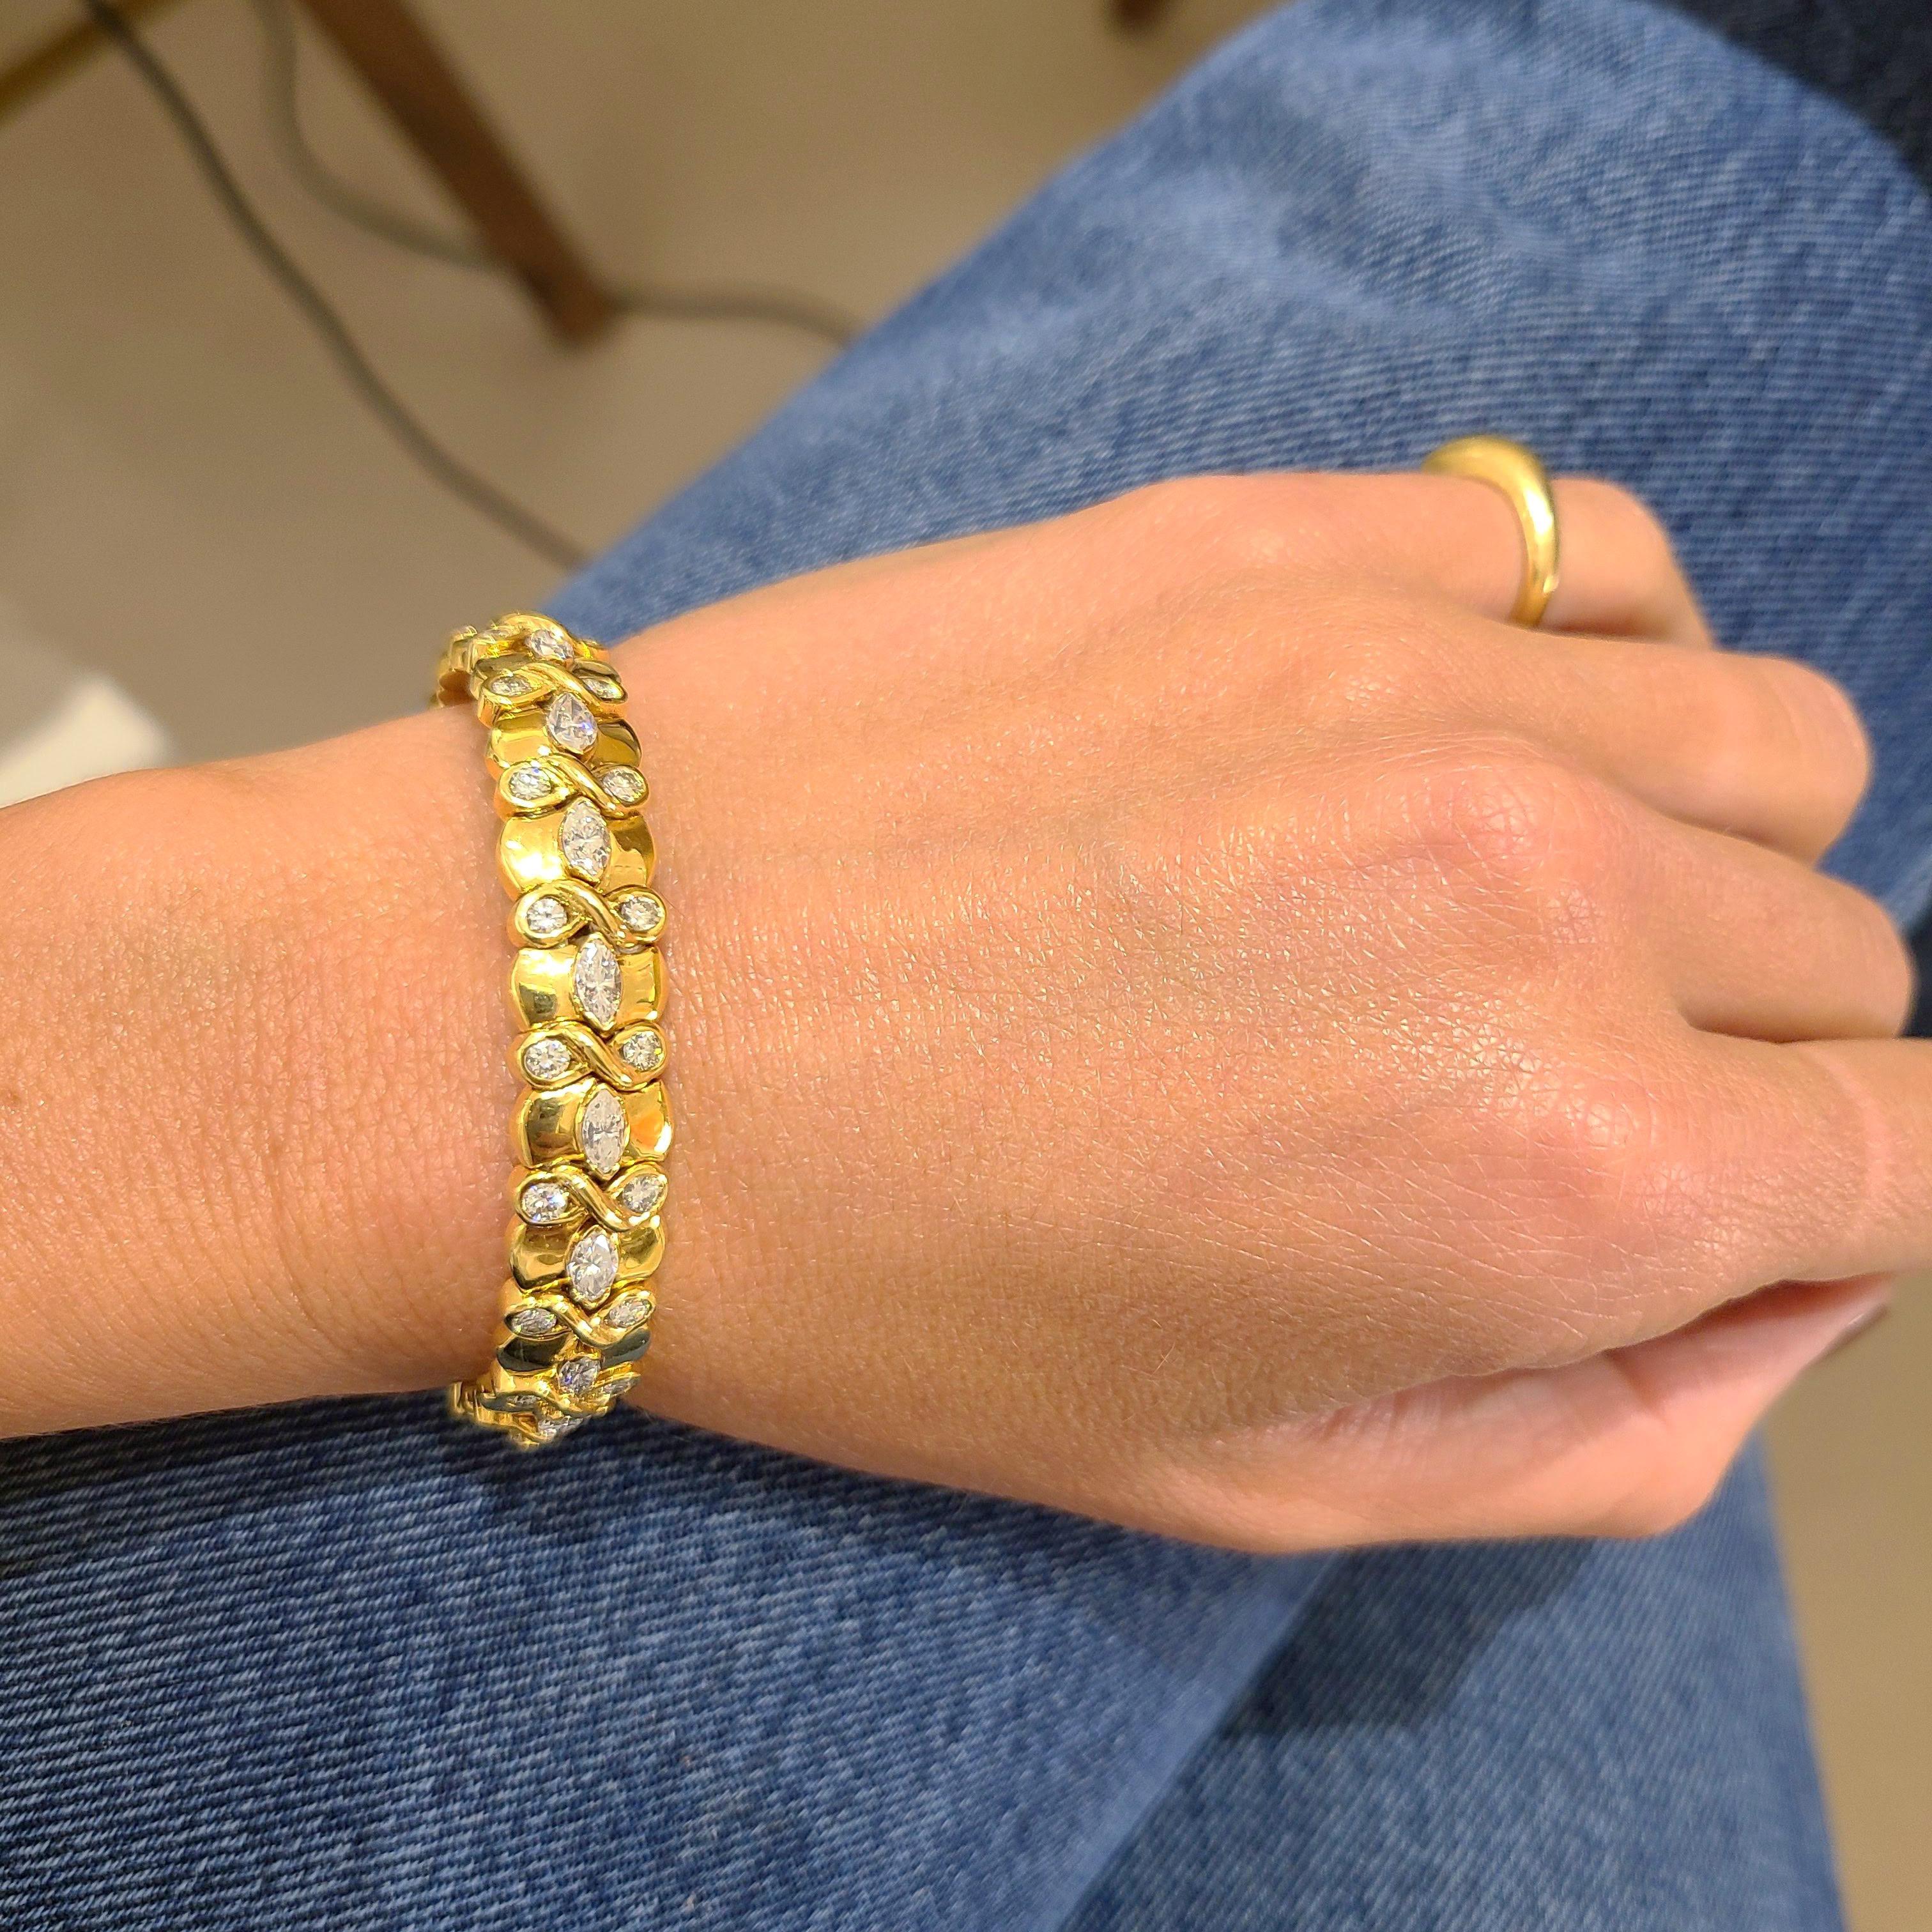 Cellini NYC Manschettenarmband aus 18 Karat Gelbgold. Das Armband ist mit marquisen und runden Brillanten besetzt. Das Armband misst 2,5